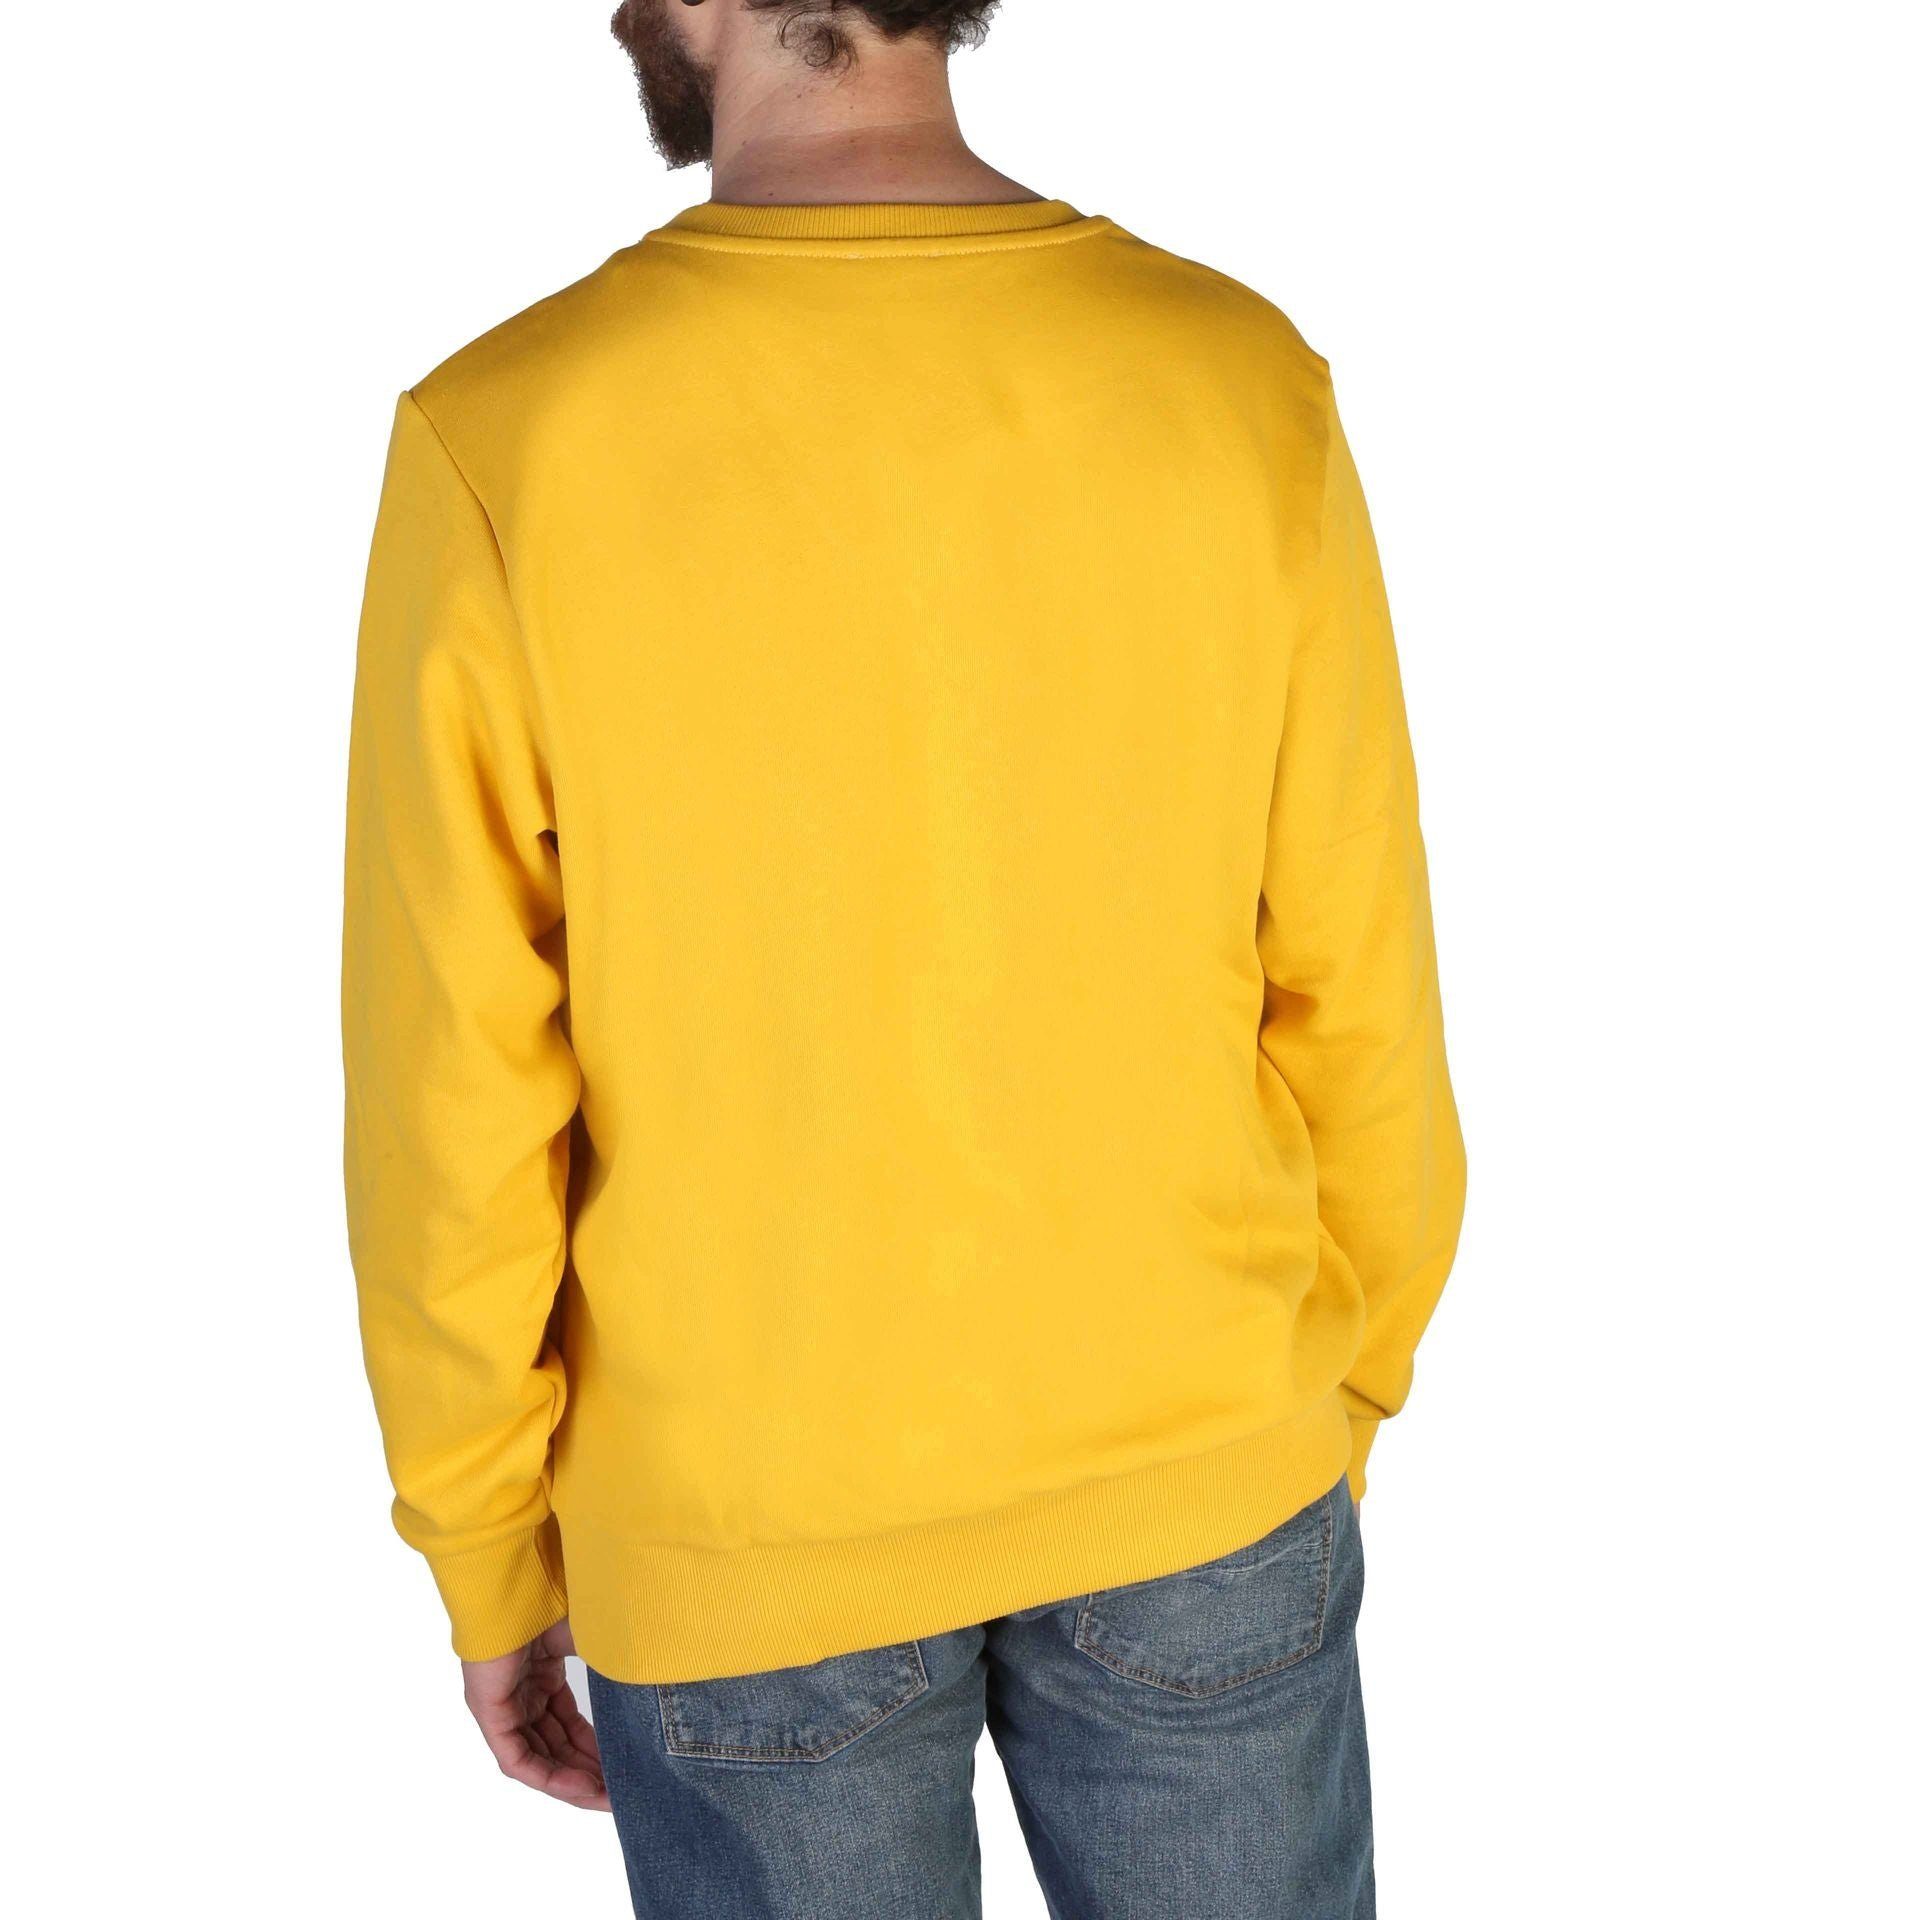 Diesel Sweatshirt Diesel Herren Sweatshirt Frühjahr/Sommer Ihr Kollektion, wartet! Komfort Sweatshirt neues Gelb Stil und - Diesel